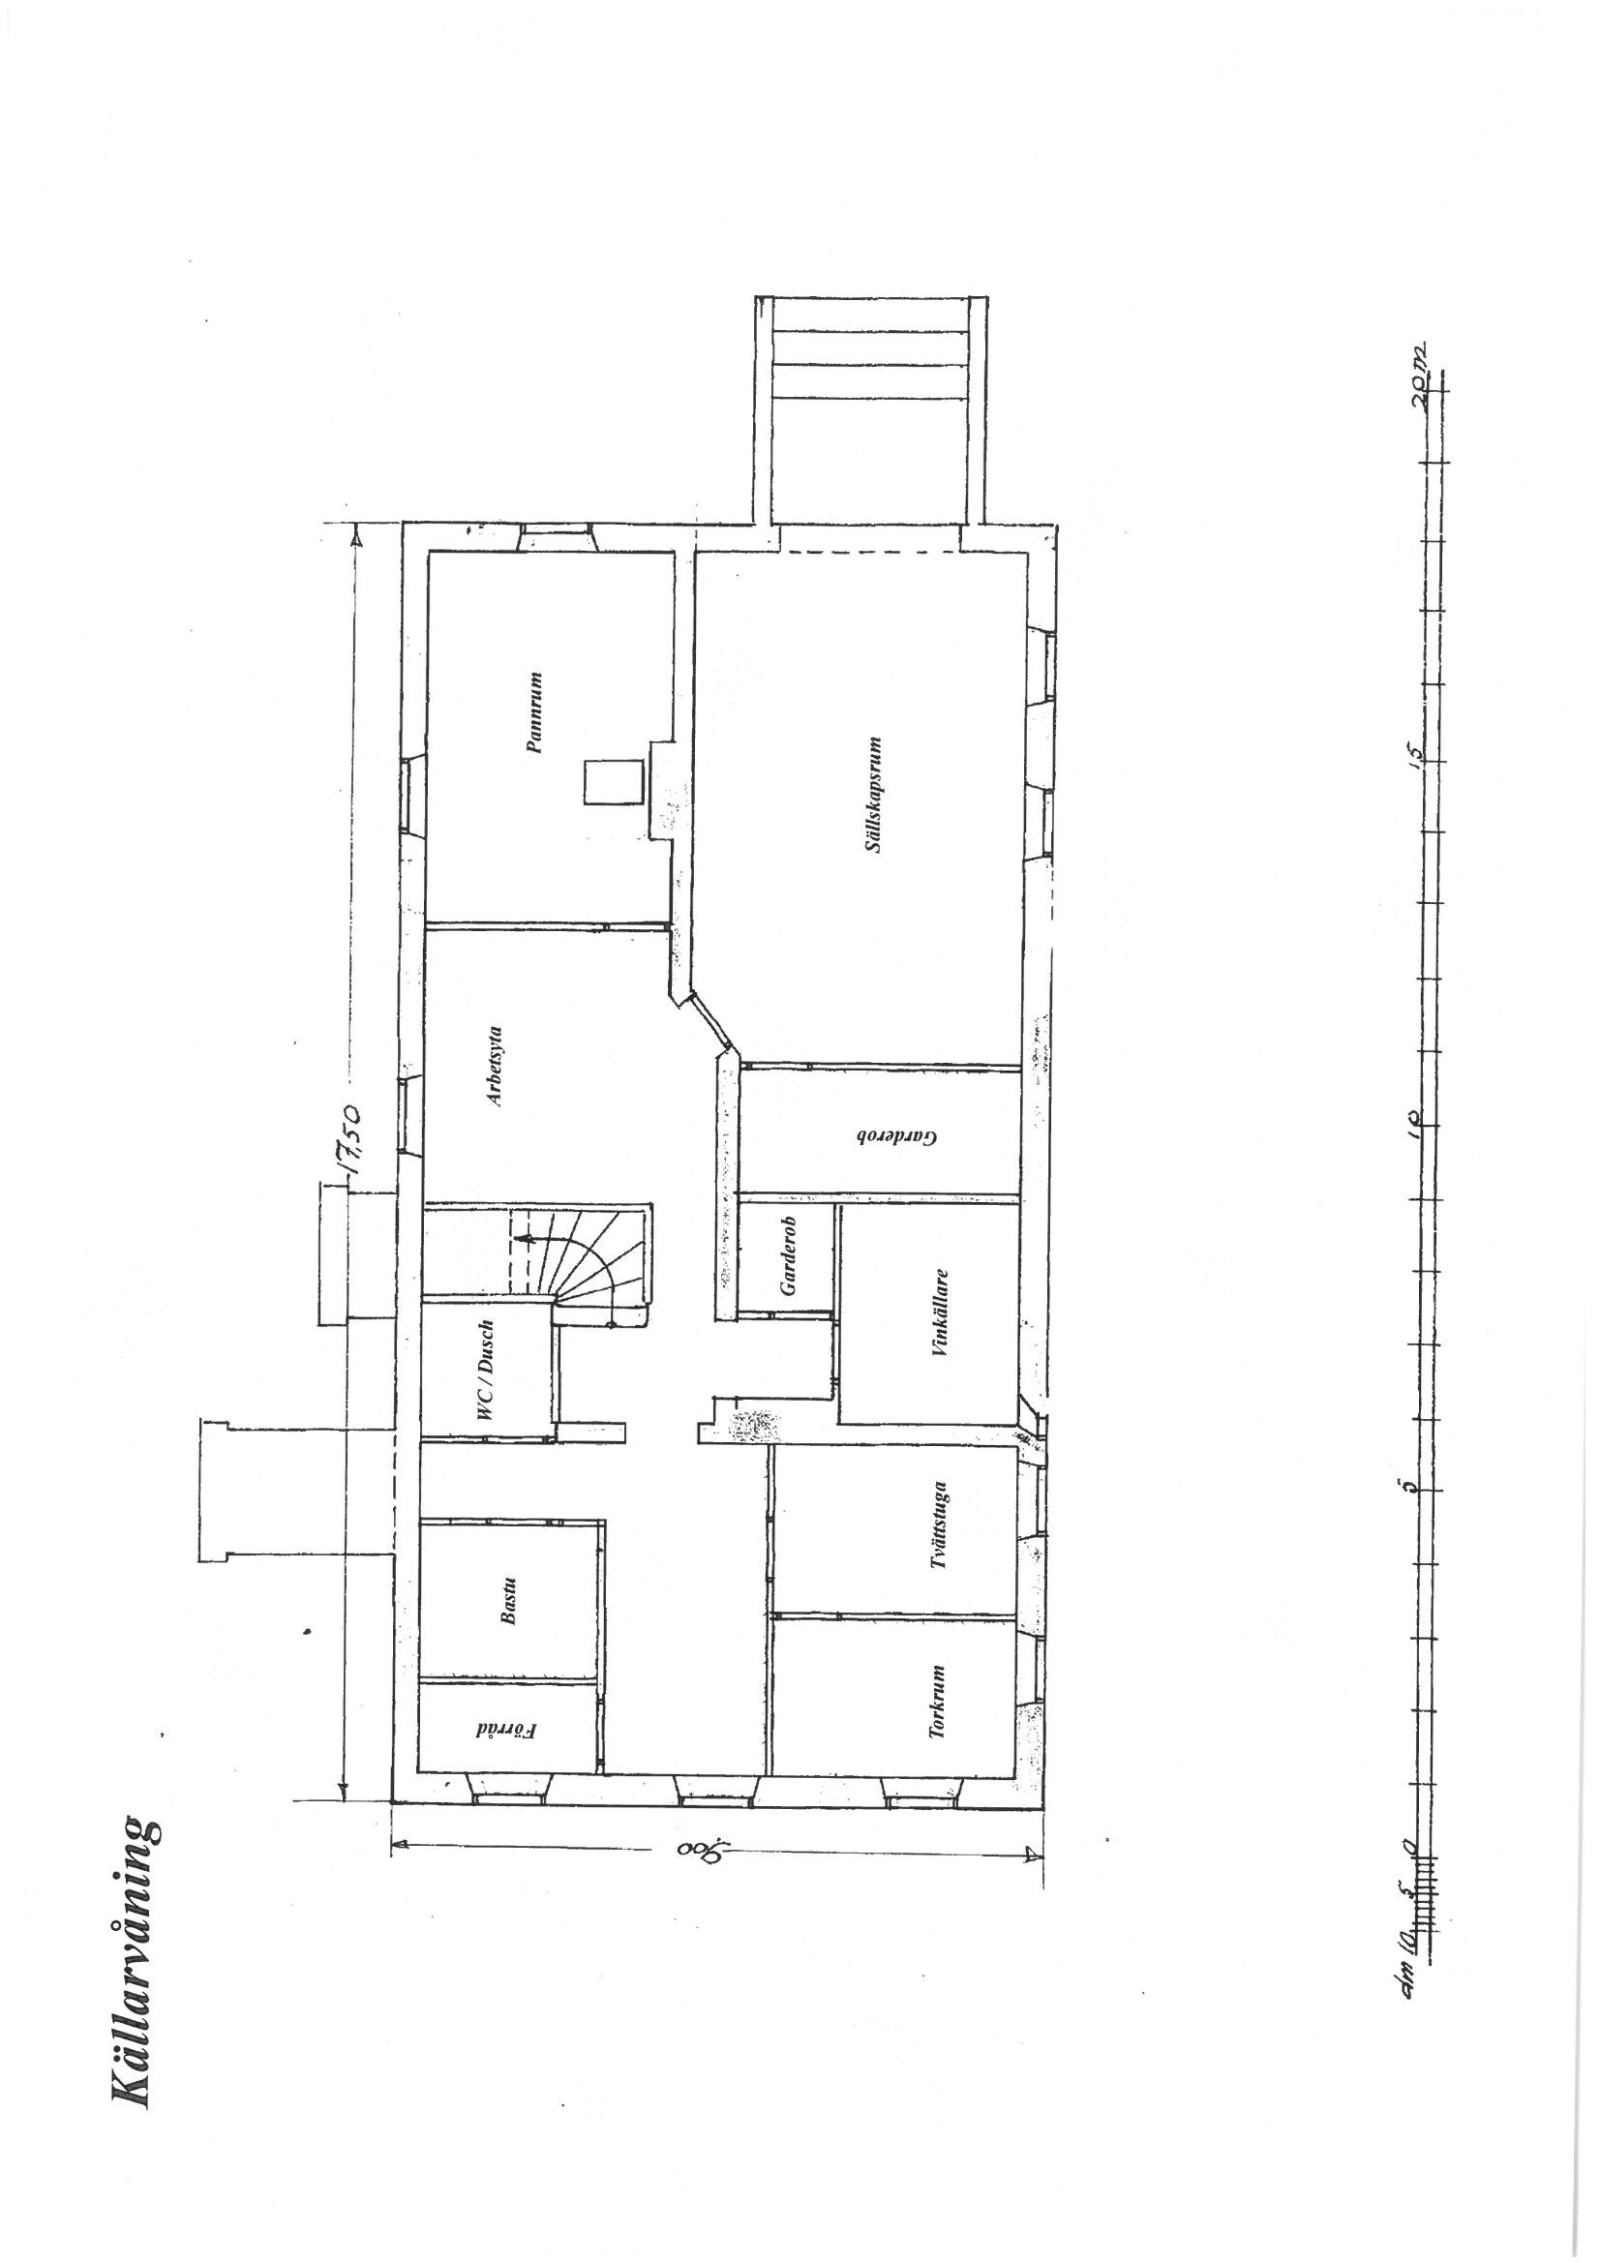 Källarvåning skalenlig ritning Östbergavägen 4